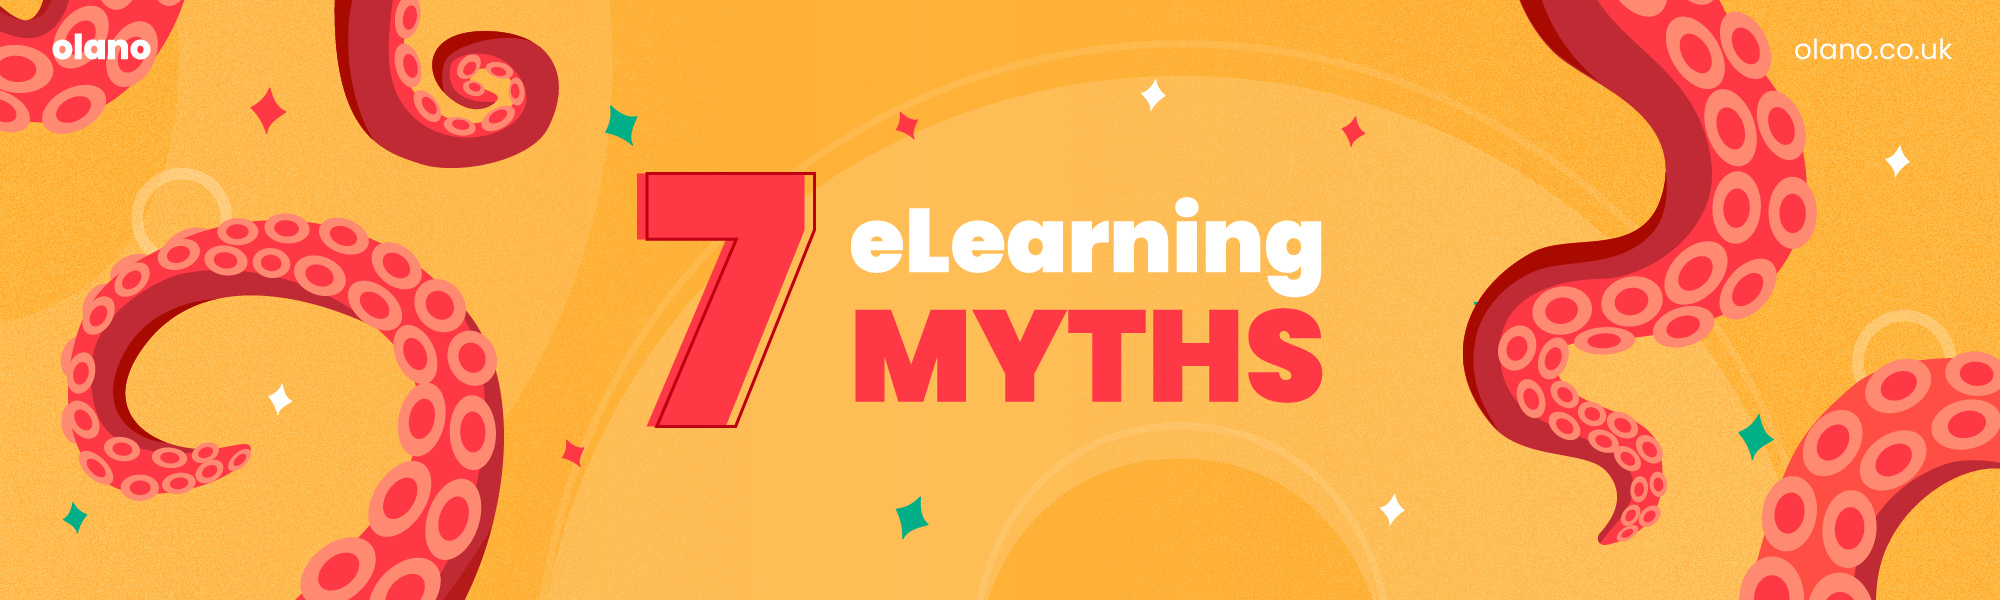 7 eLearning Myths